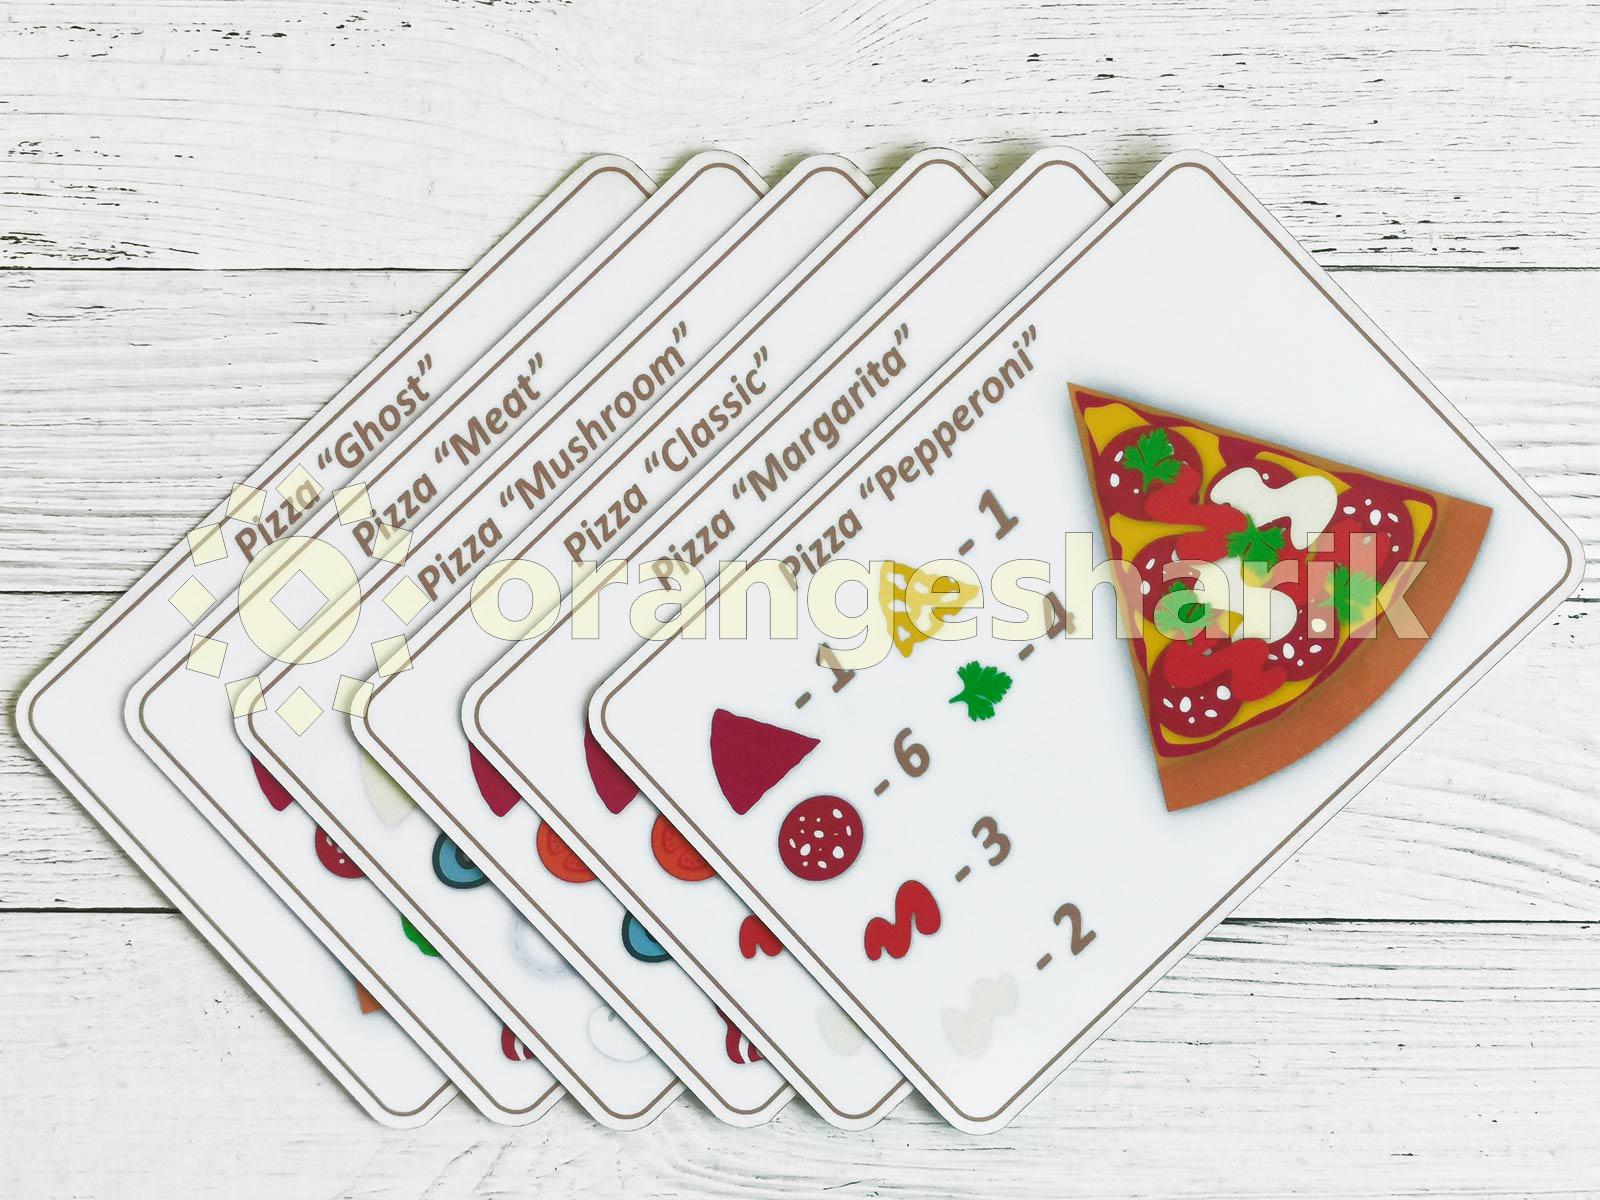 Ламинированные карточки. Карточки пицца. Заламинировать карточки. Карточки для игры пицца. Ламинированные карты.